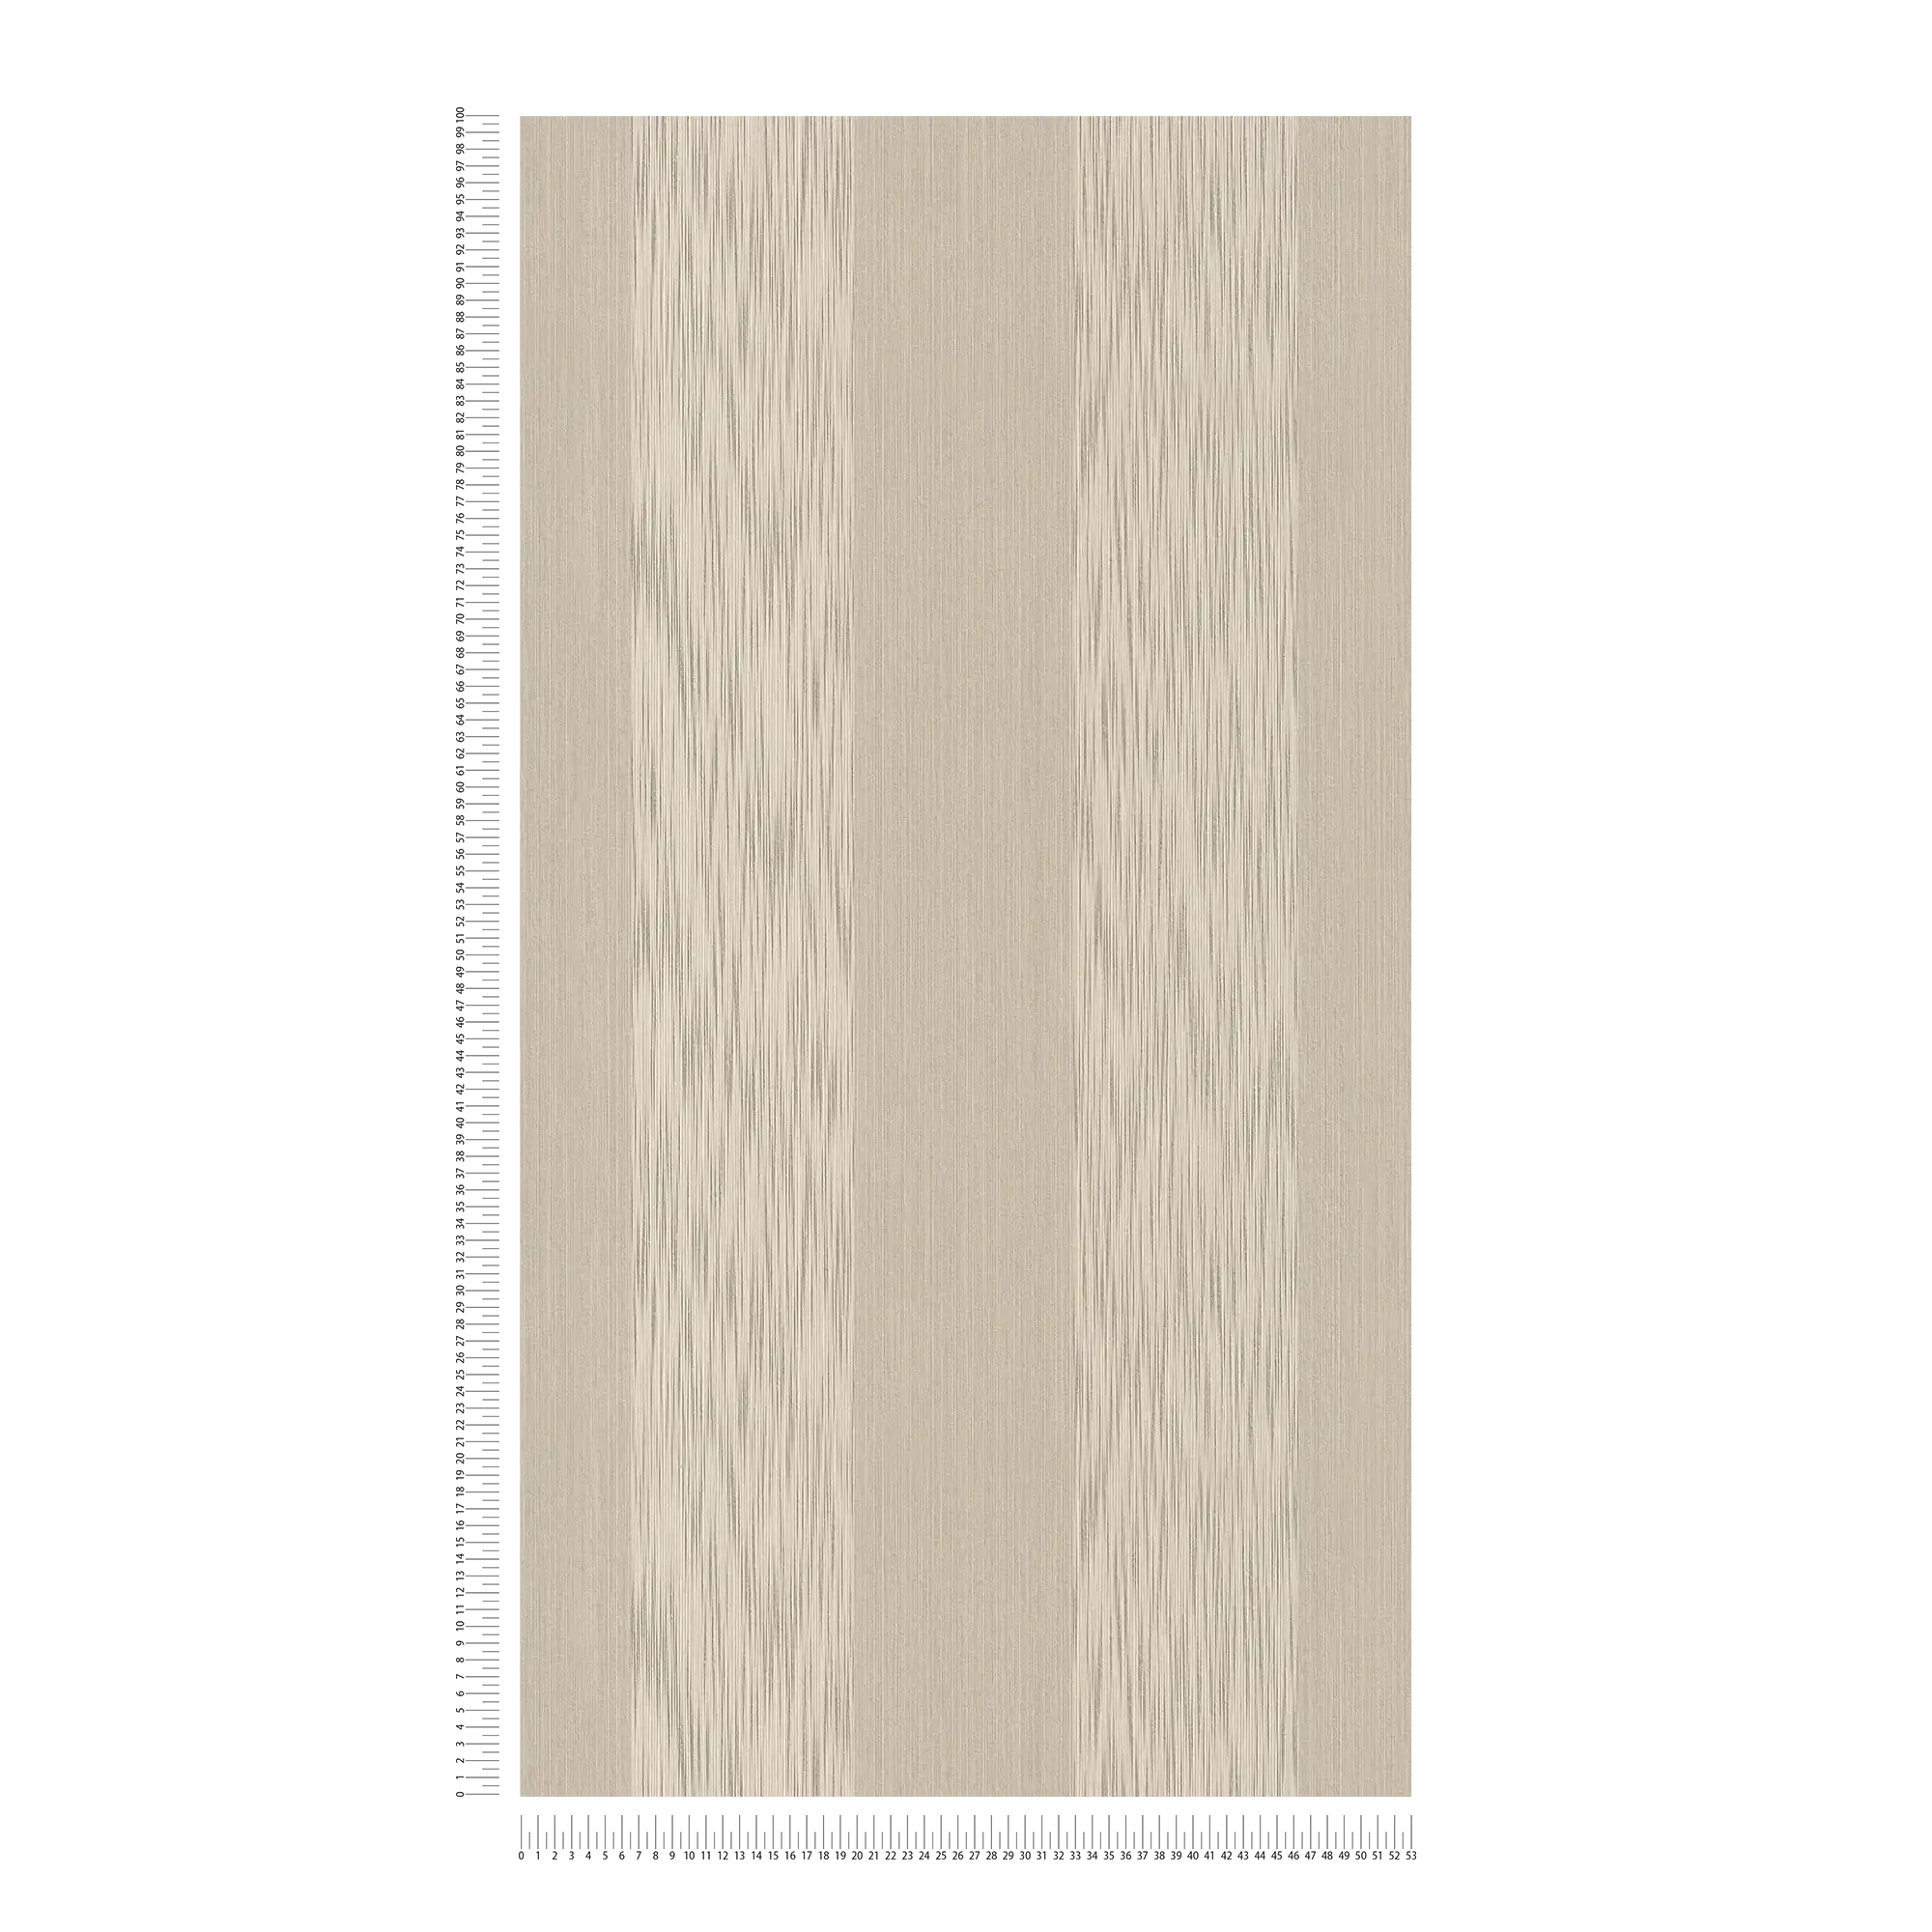             Papel pintado no tejido con estructura textil y diseño de rayas tono sobre tono - beige
        